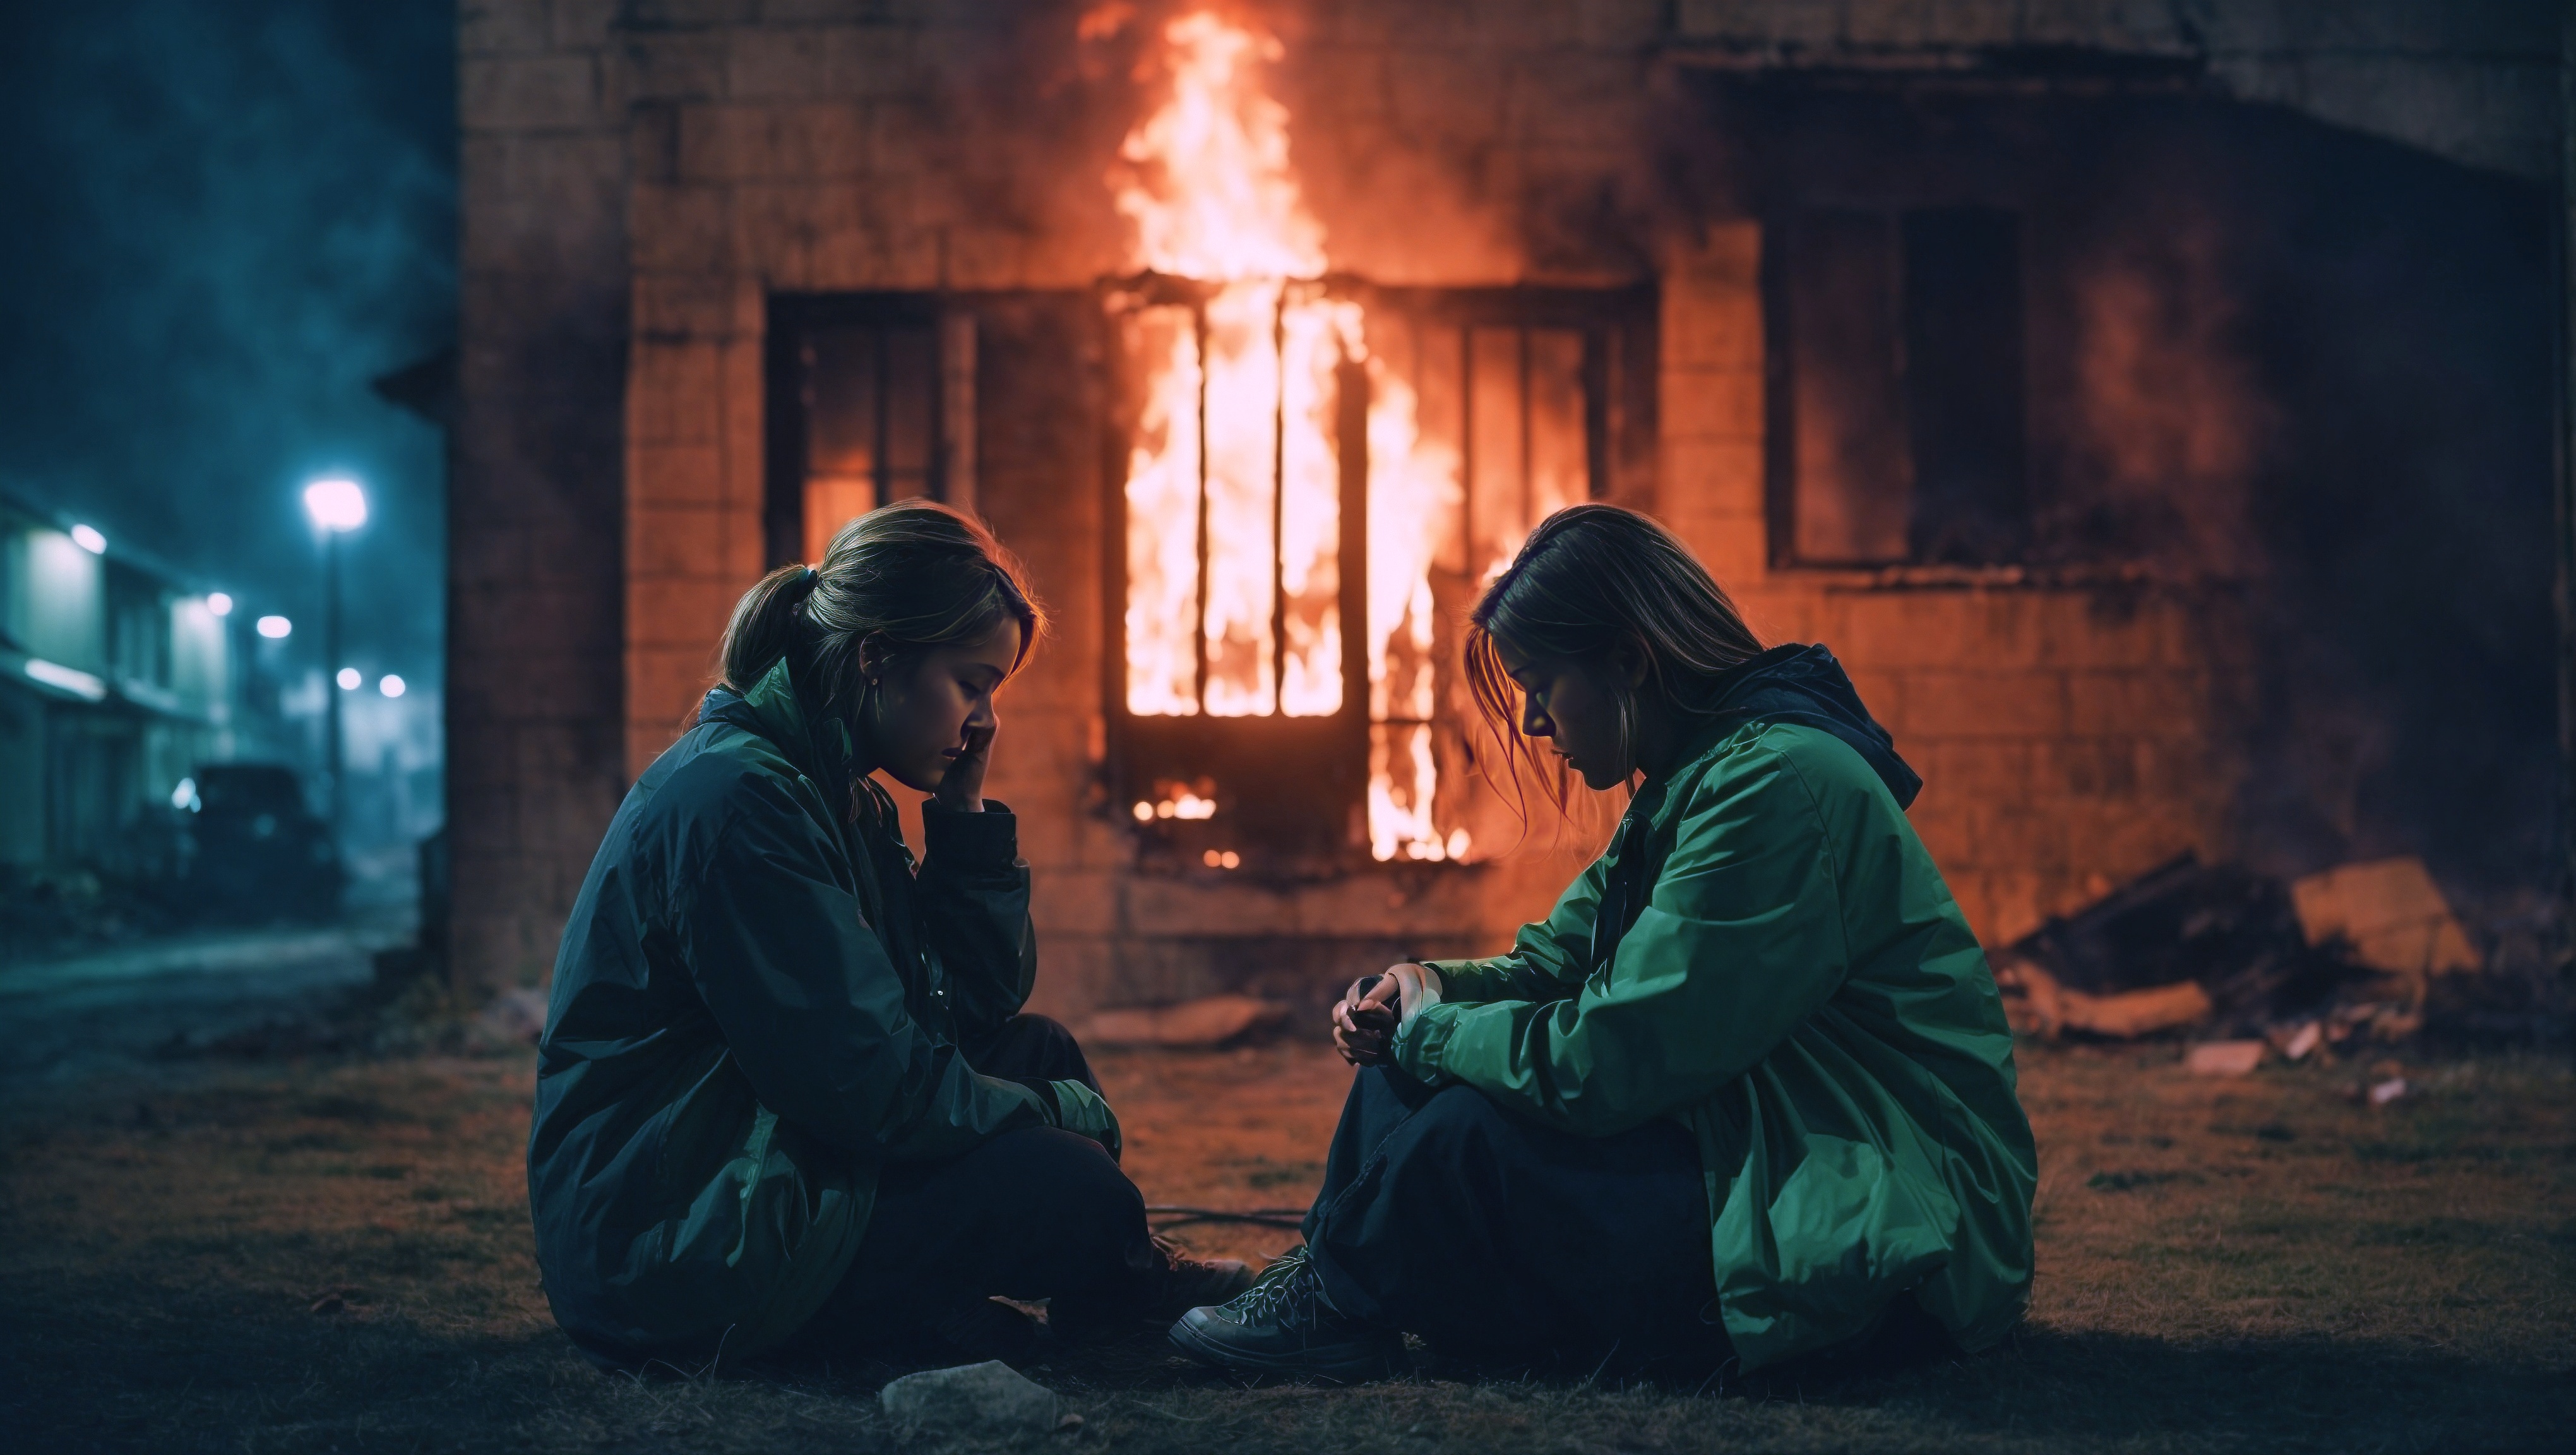 Бесплатное фото Две женщины сидят бок о бок перед зданием, охваченным огнем